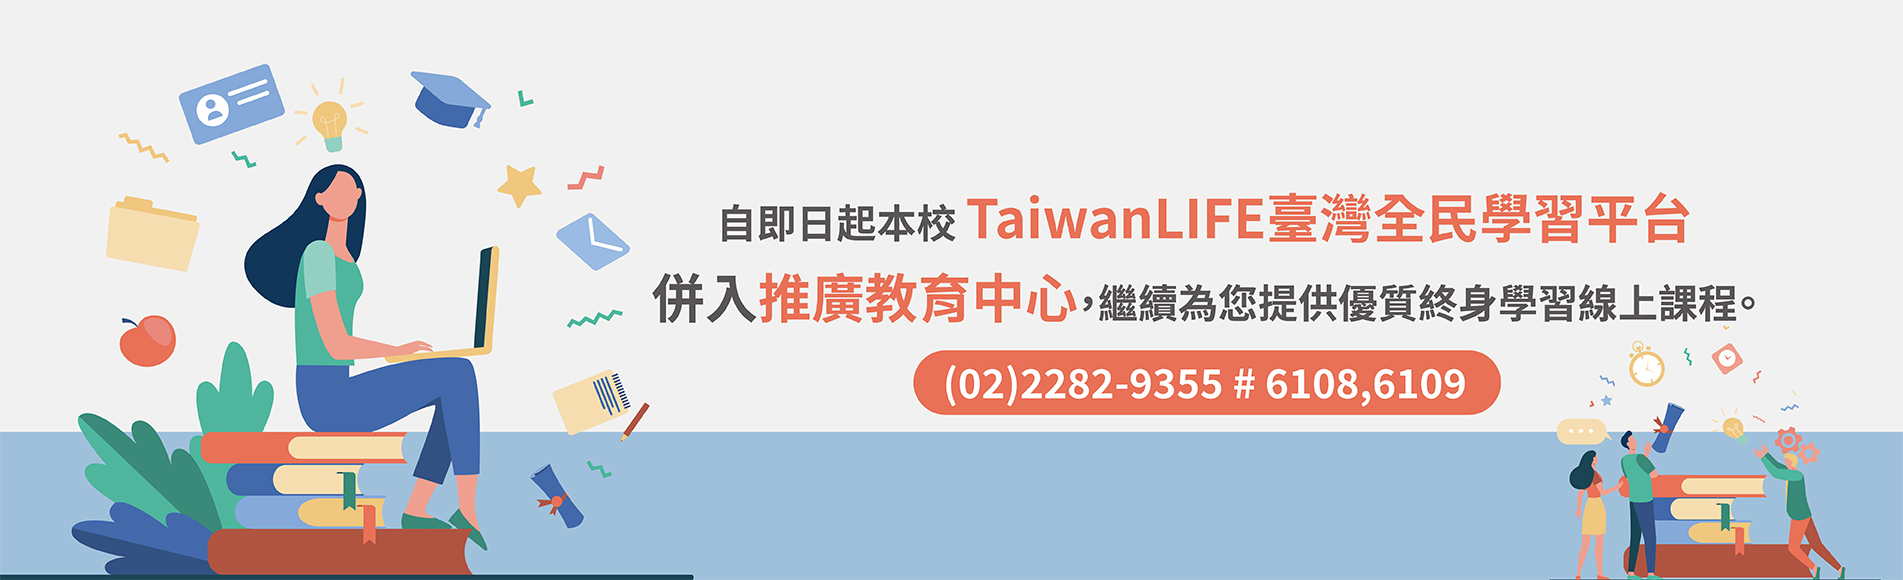 TaiwanLIFE